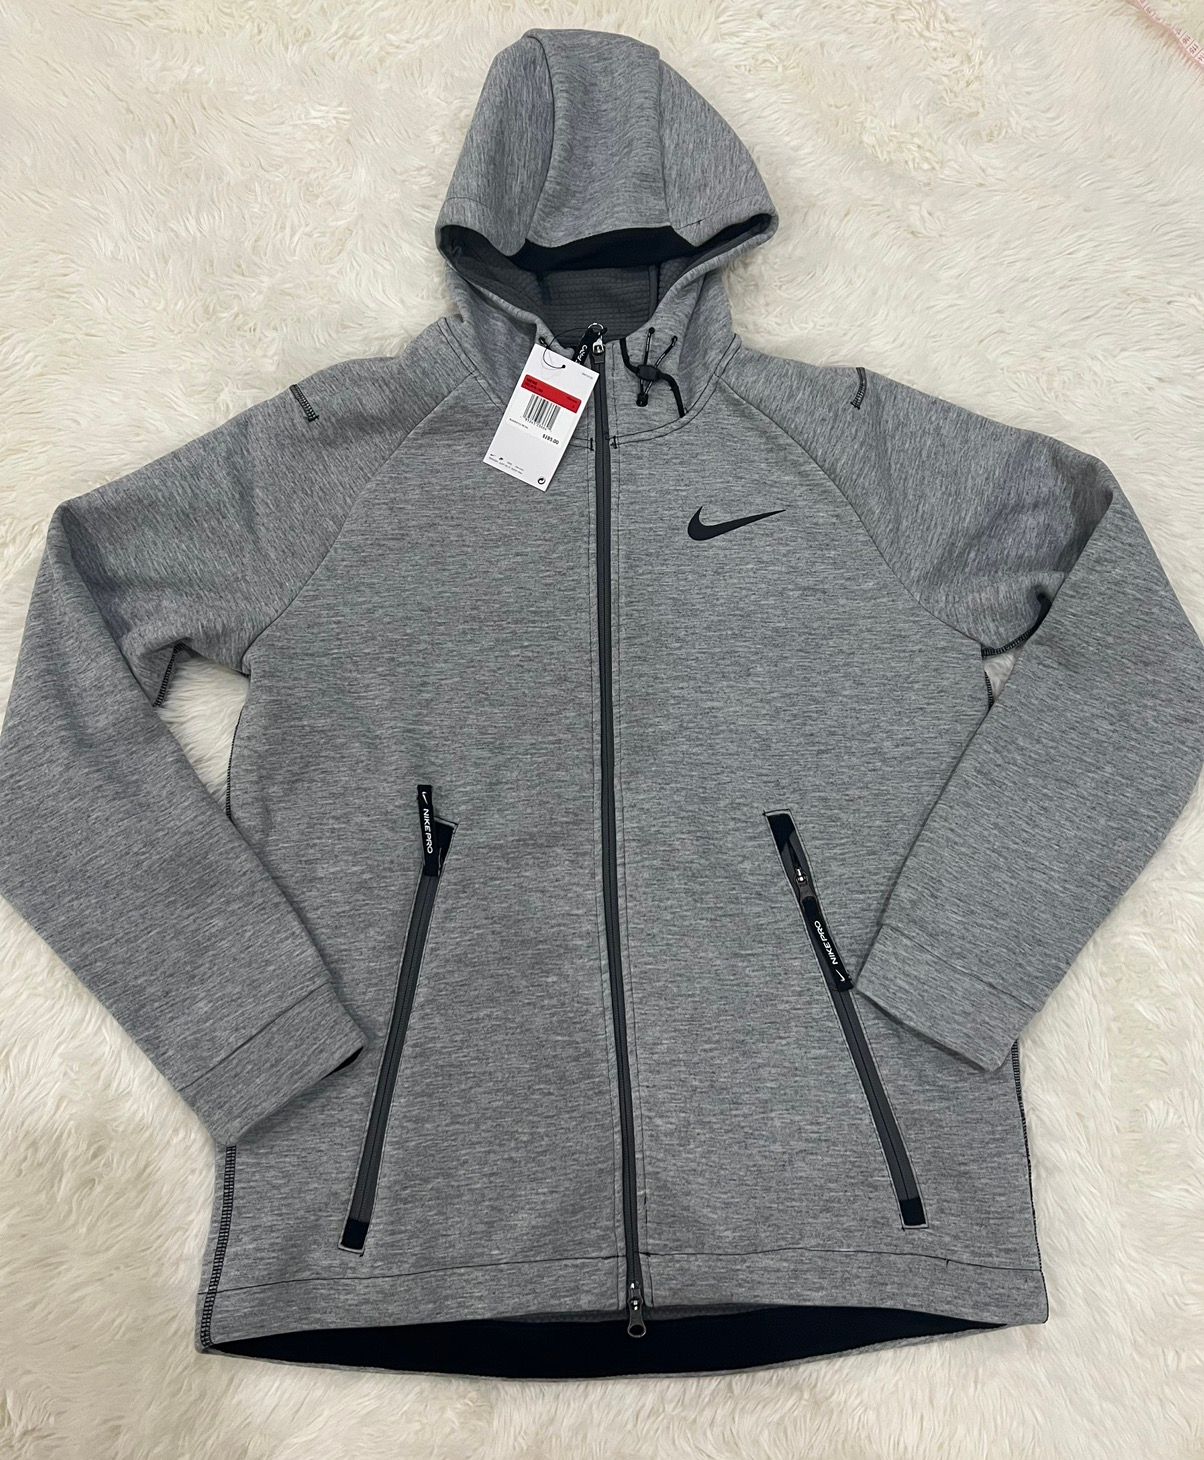 Nike Nike Therma-FIT Full-Zip Training Hoodie Jacket Gray Black | Grailed